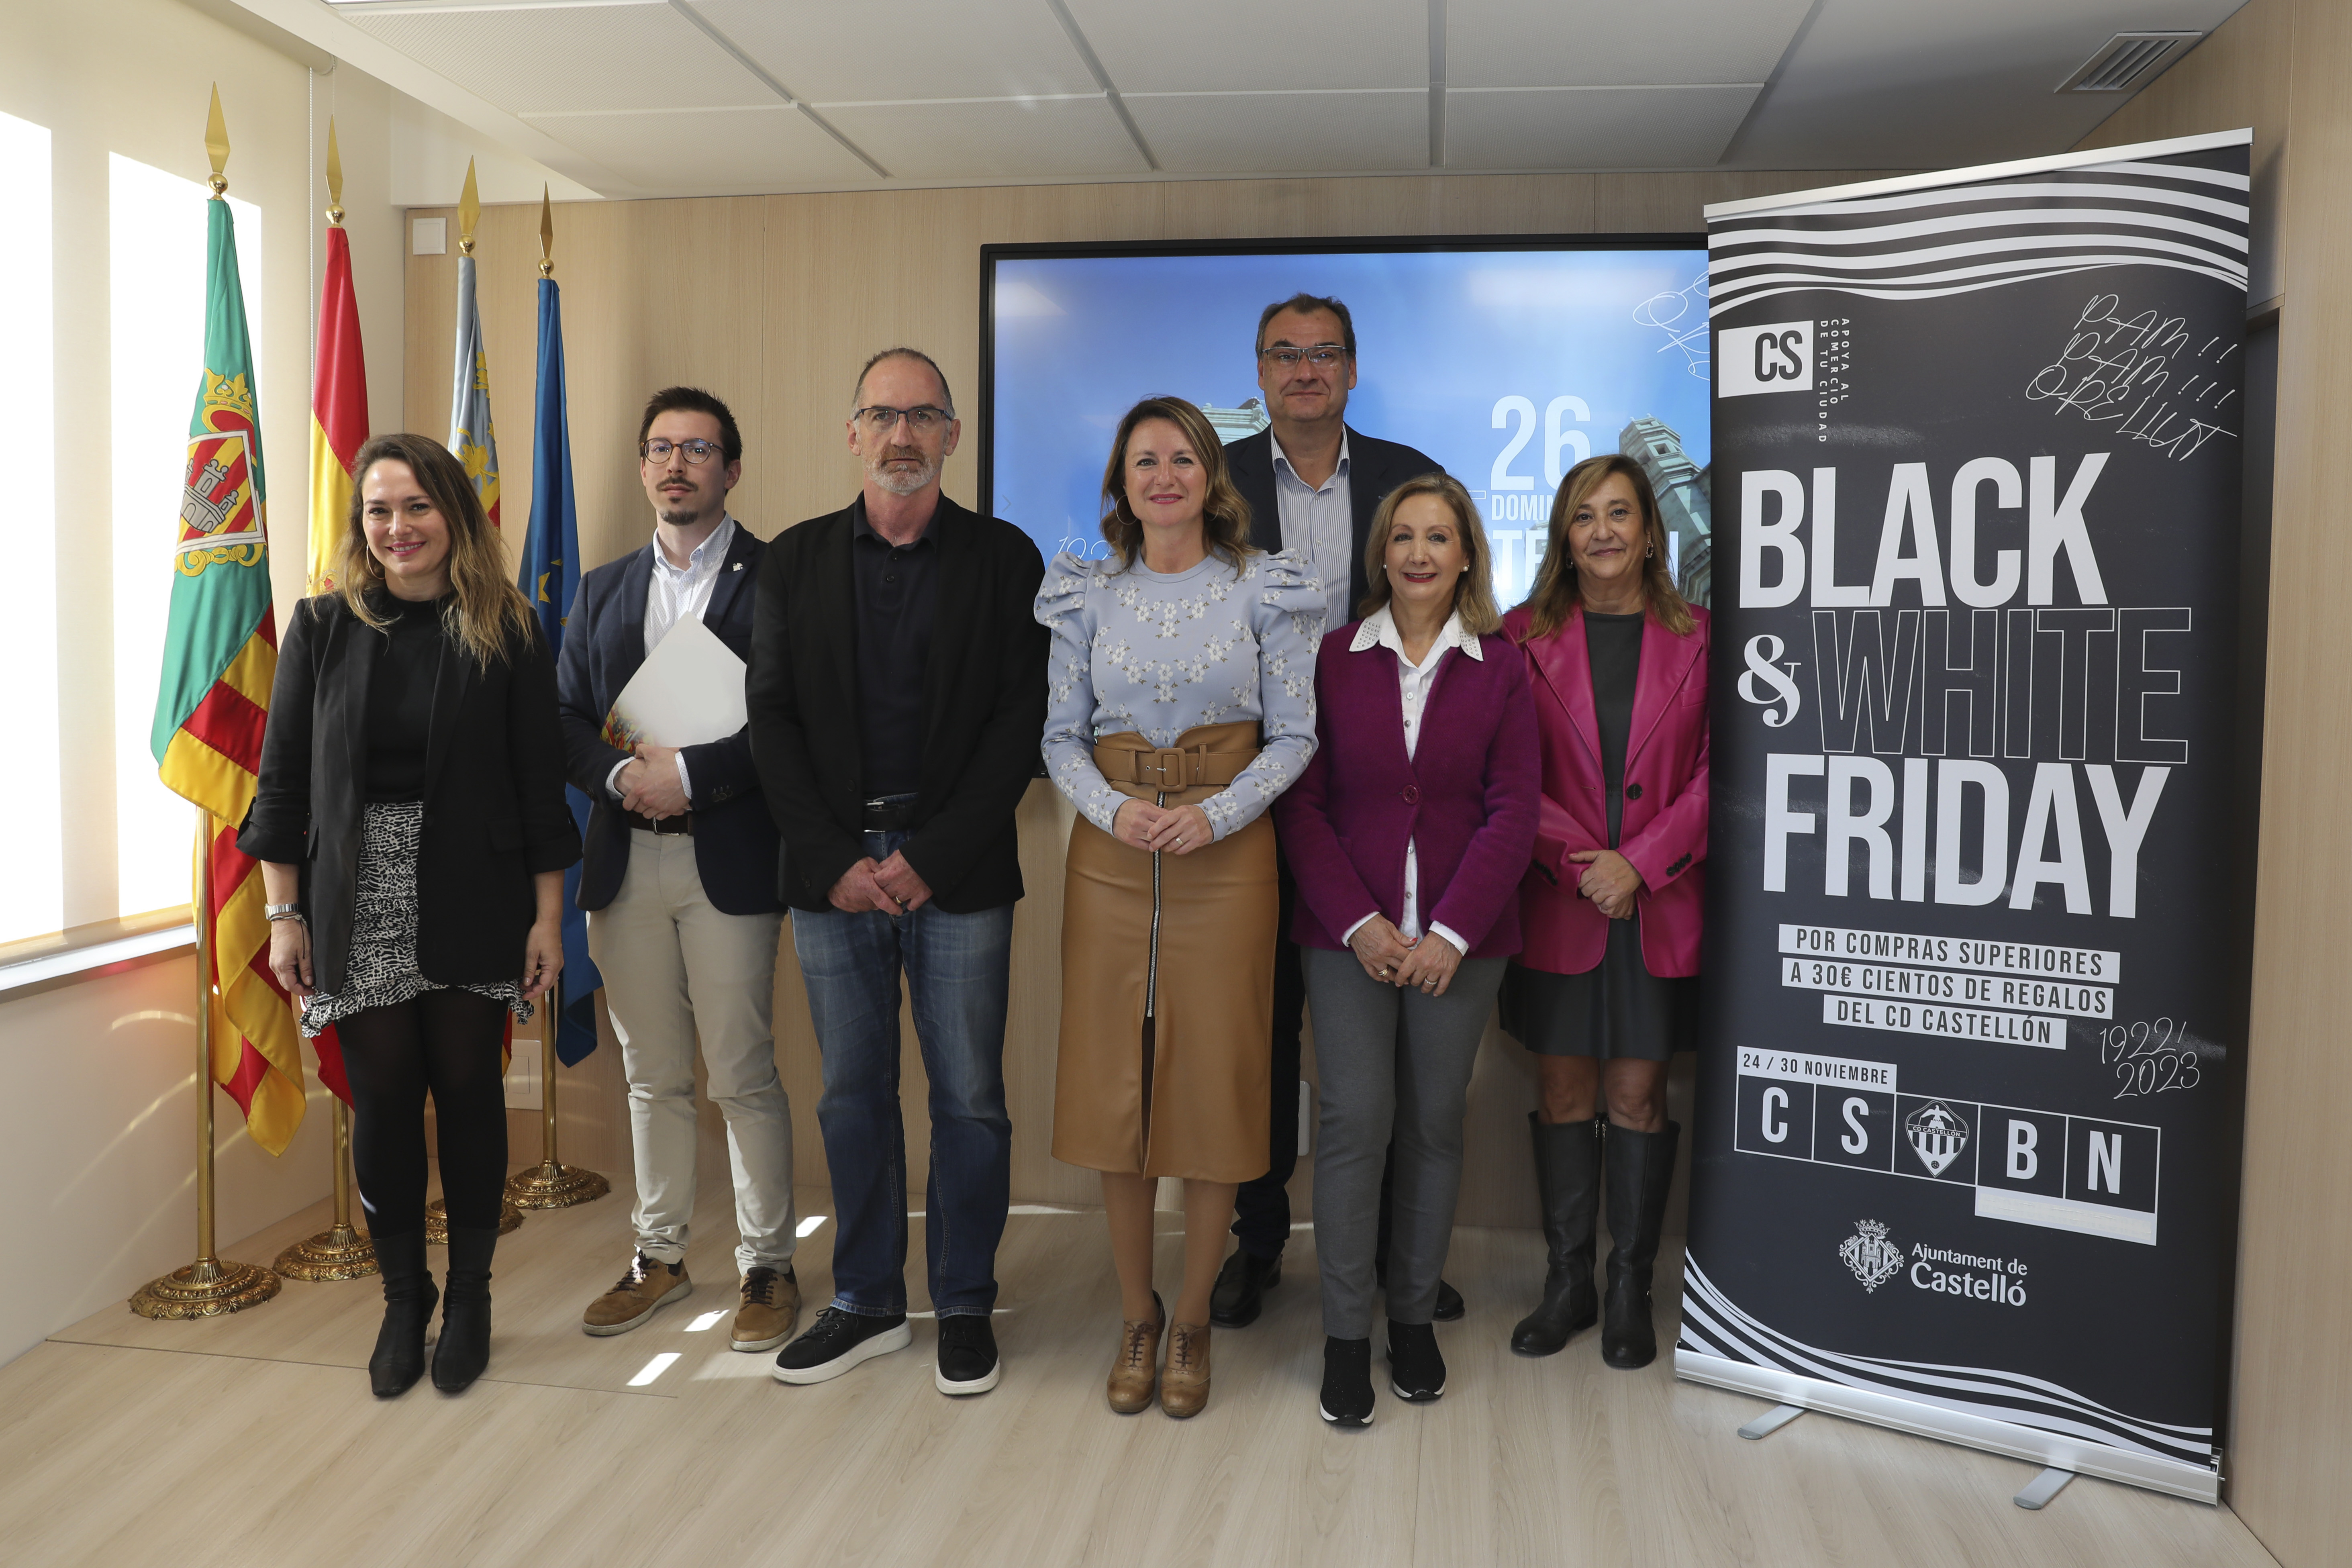 Carrasco: “Llancem dues campanyes pel Black Friday en la nostra ferma aposta pel comerç local on sumem al CD Castelló i als comerciants per a mantindre viva la ciutat”